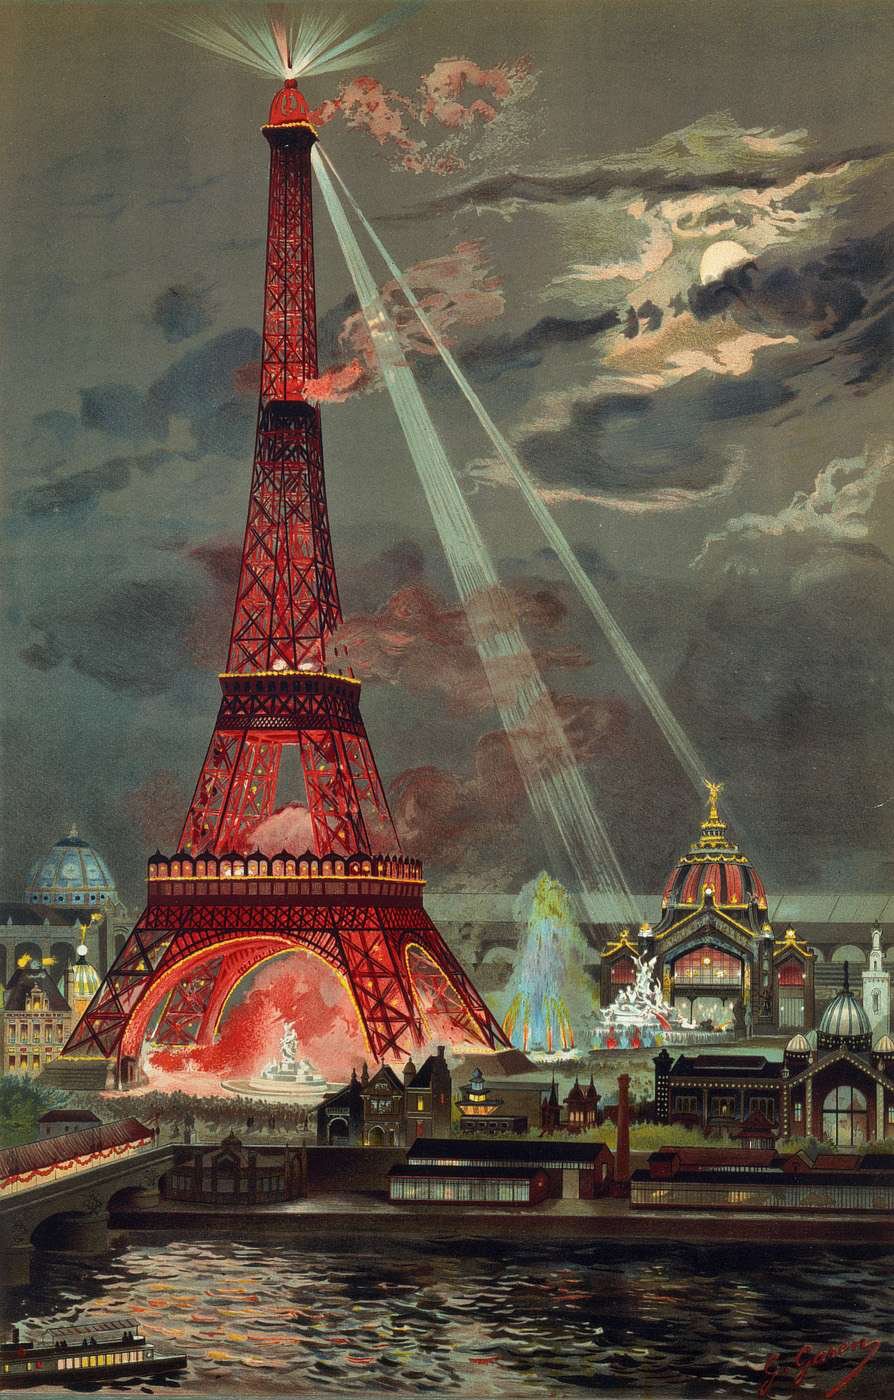 Paris 1889 Exposition: History, Images, Interpretation — Ideas